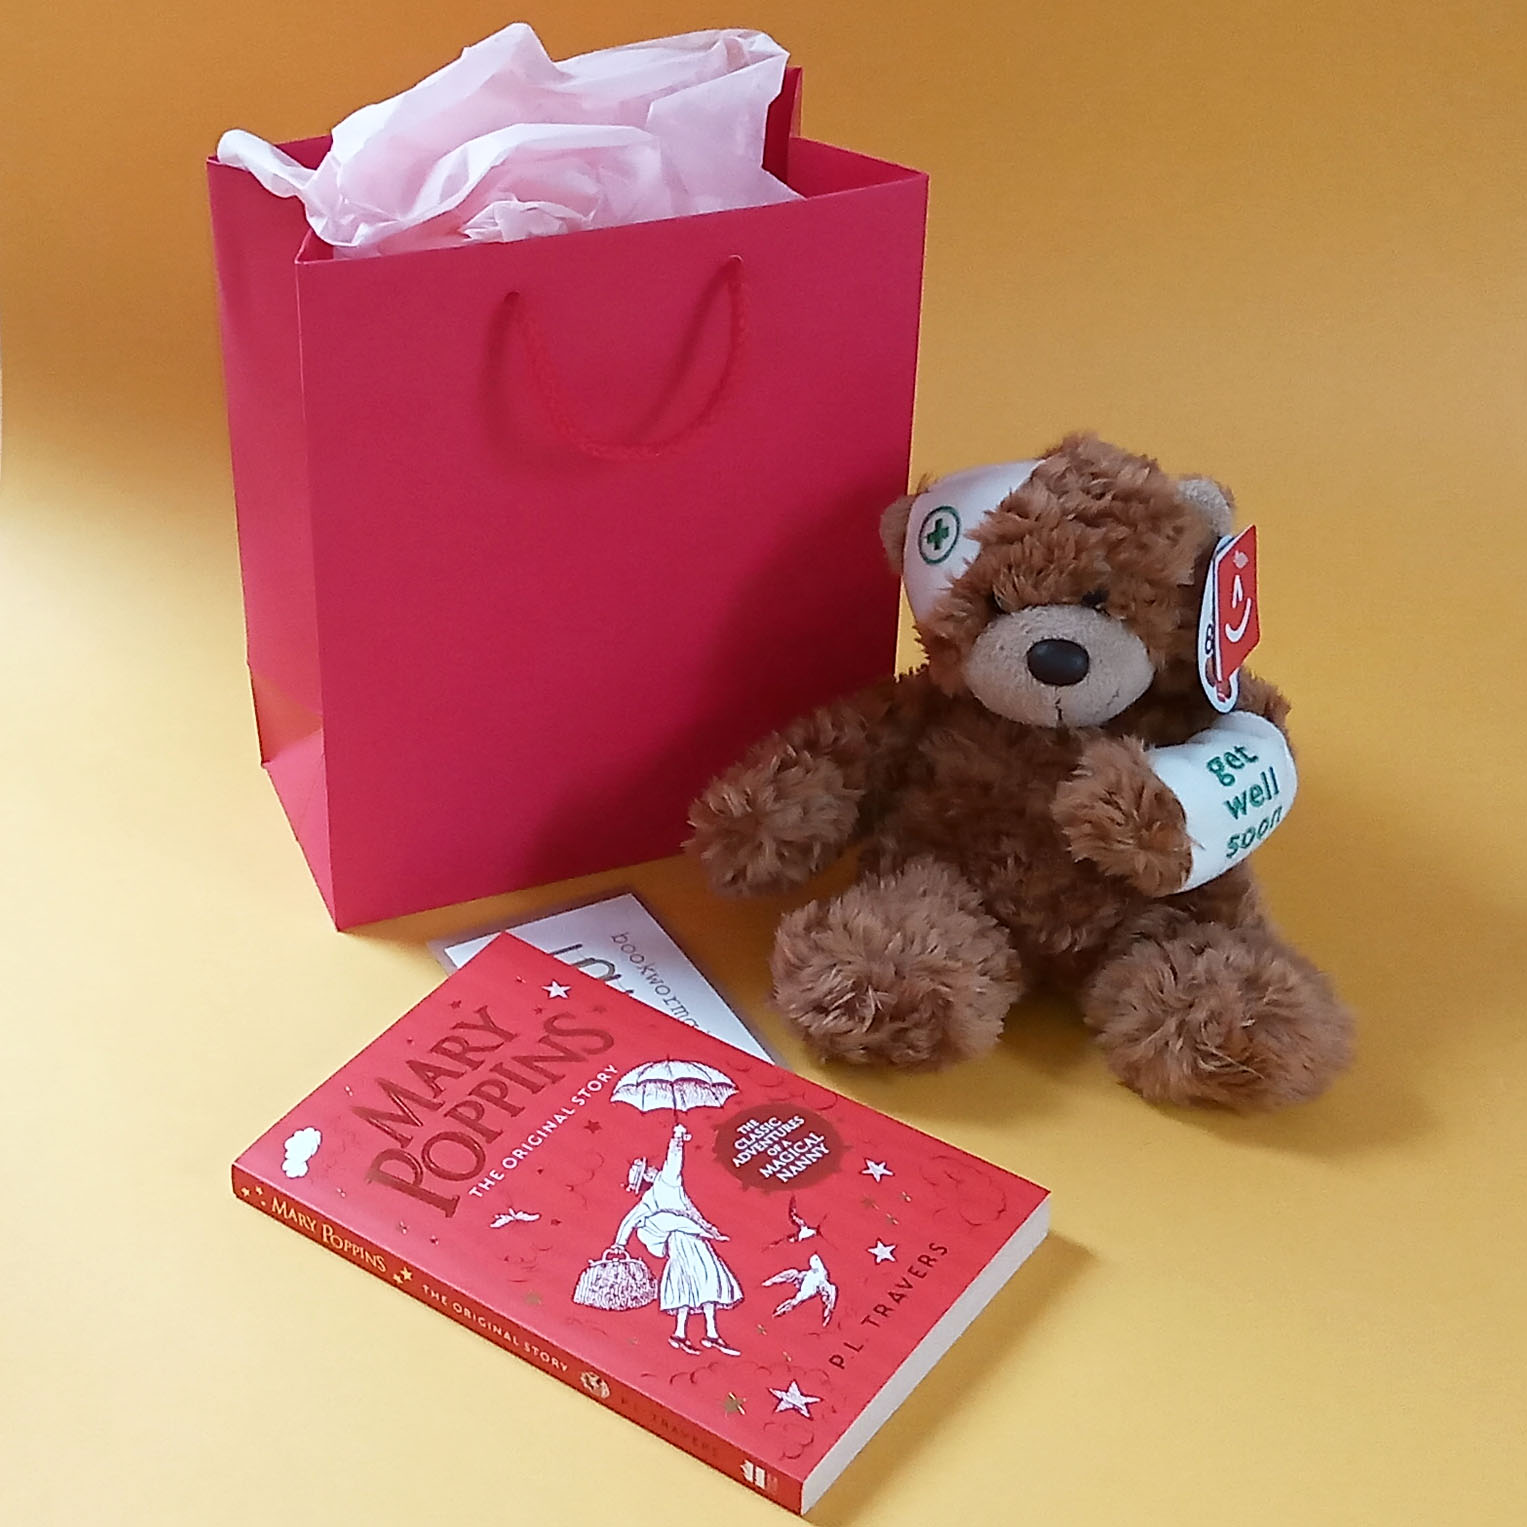 Hospital gift ideas for little girls